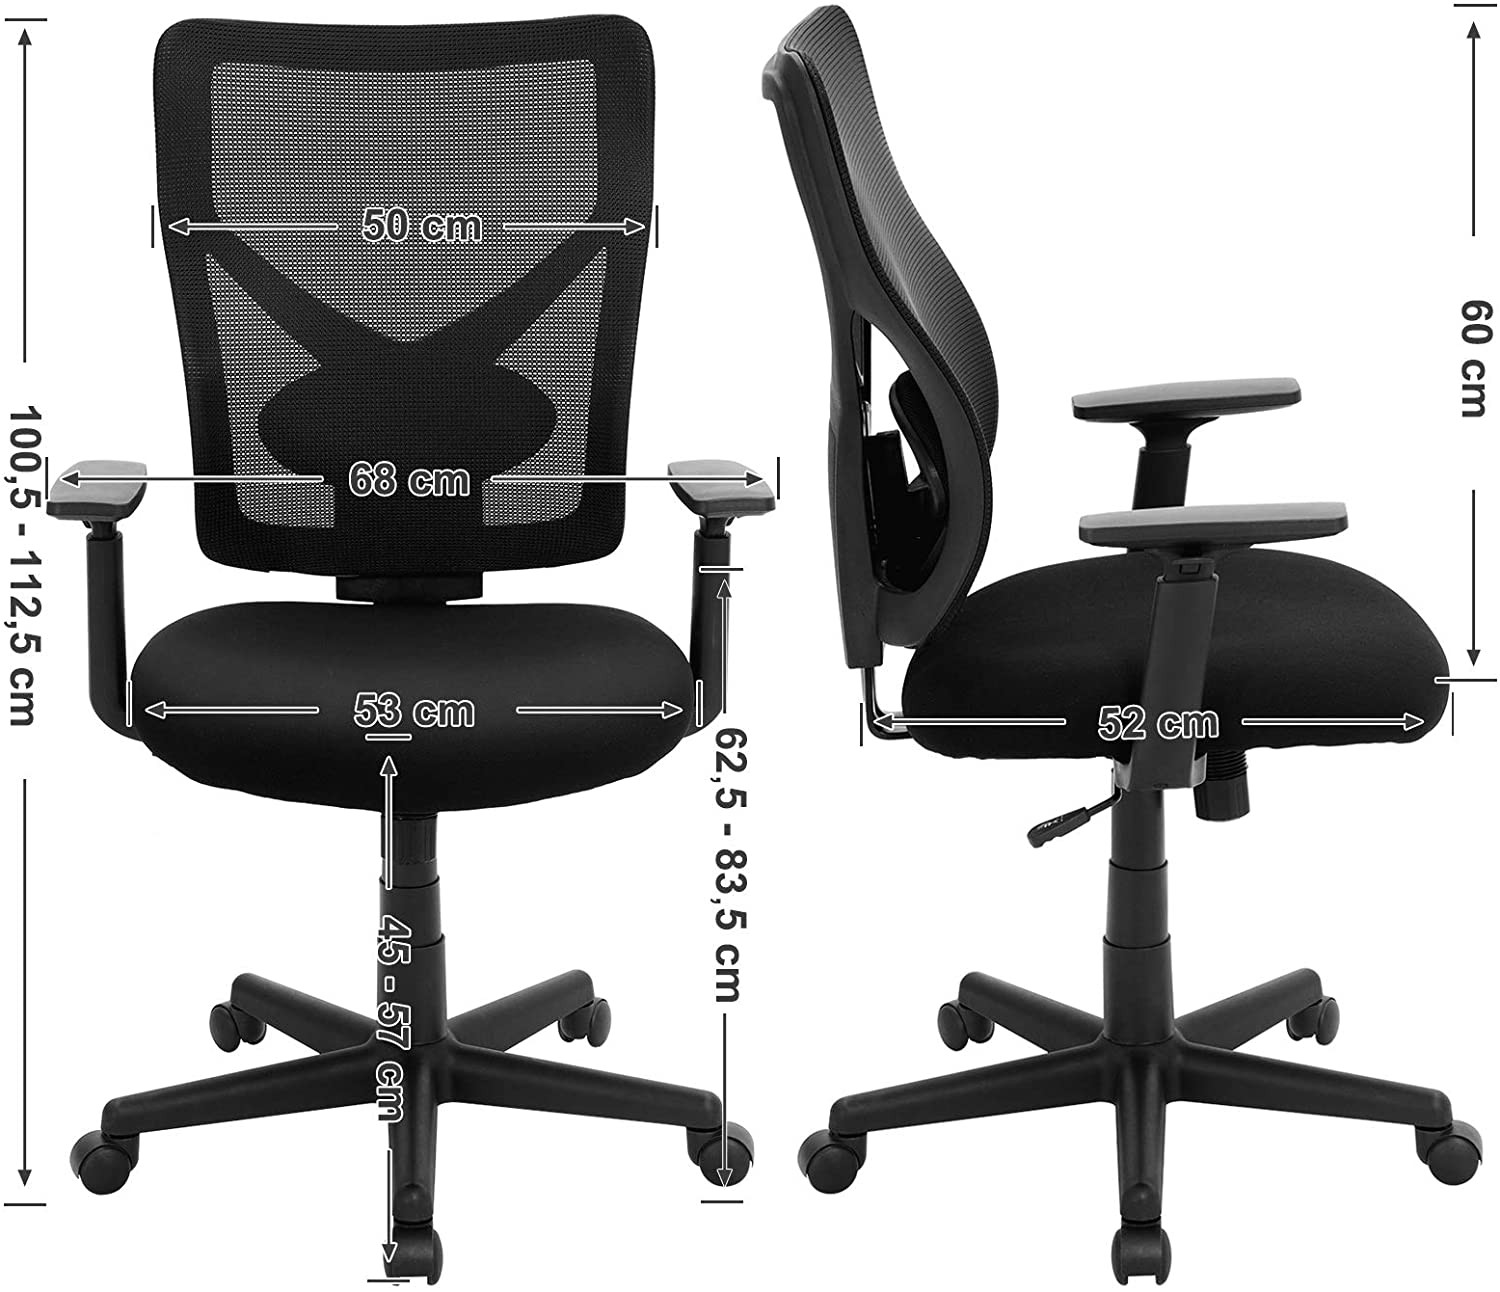 Kancelárska stolička OBN36BK